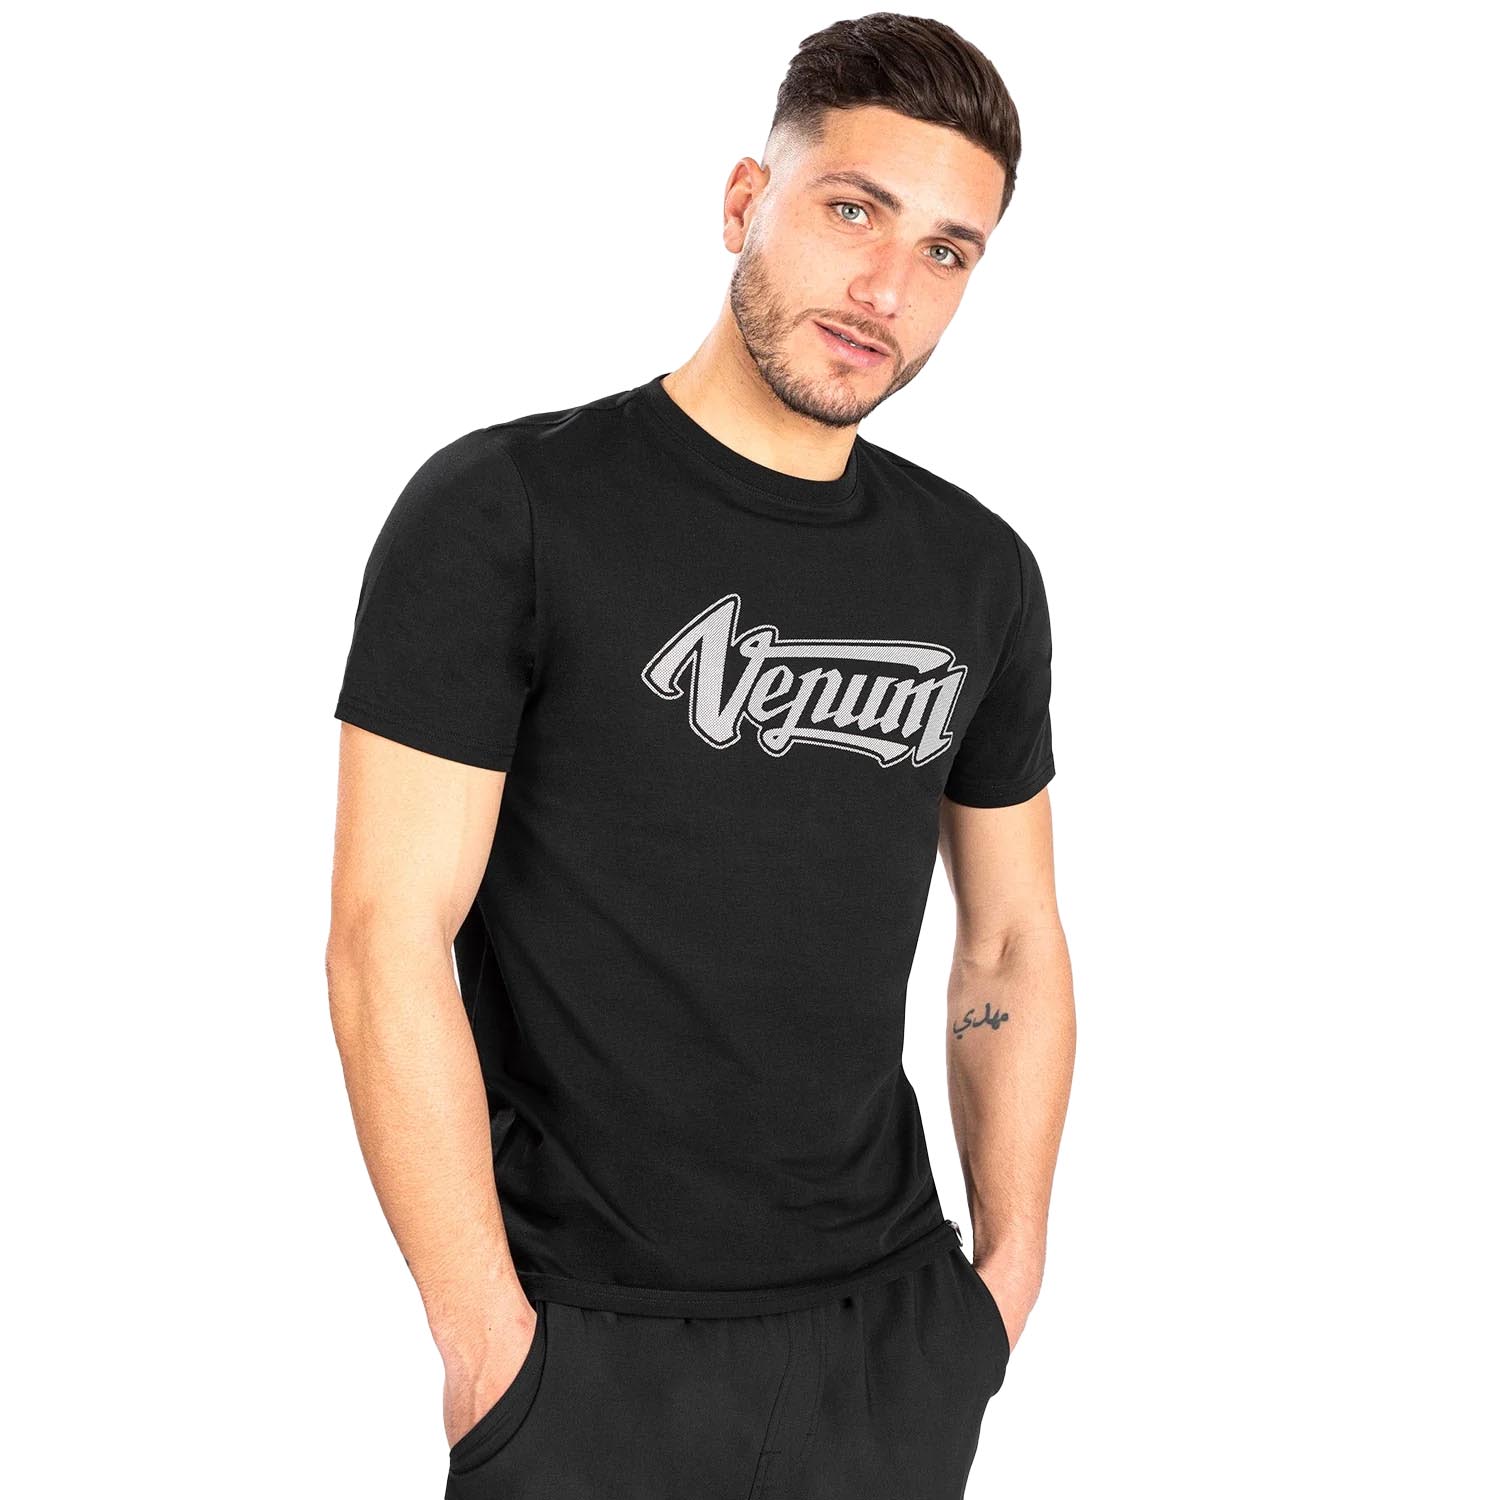 VENUM T-Shirt, Absolute 2.0, black-silver, M